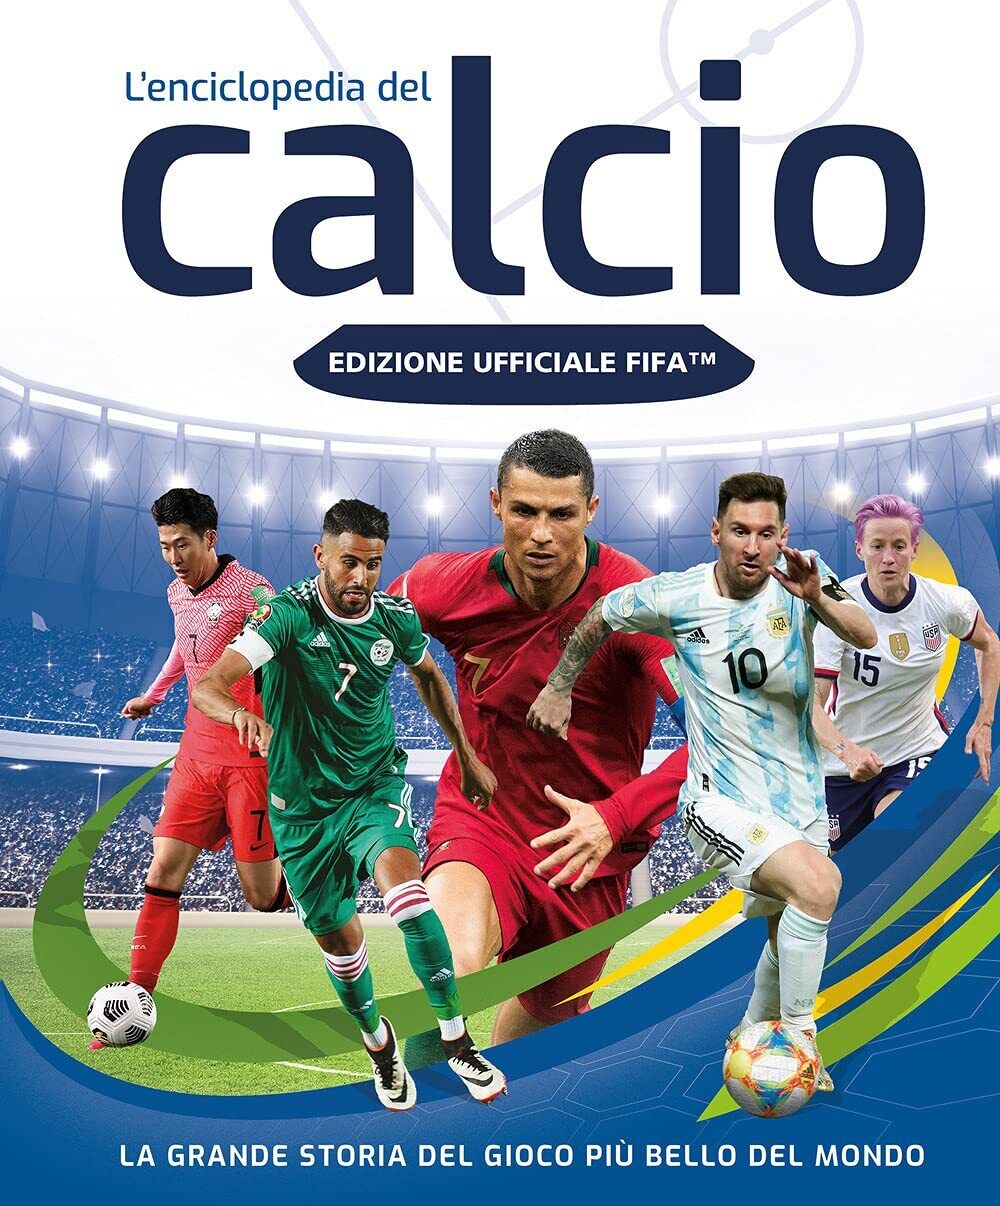 FIFA Official. L'enciclopedia del calcio - AA.VV. - Magazzini Salani, 2021